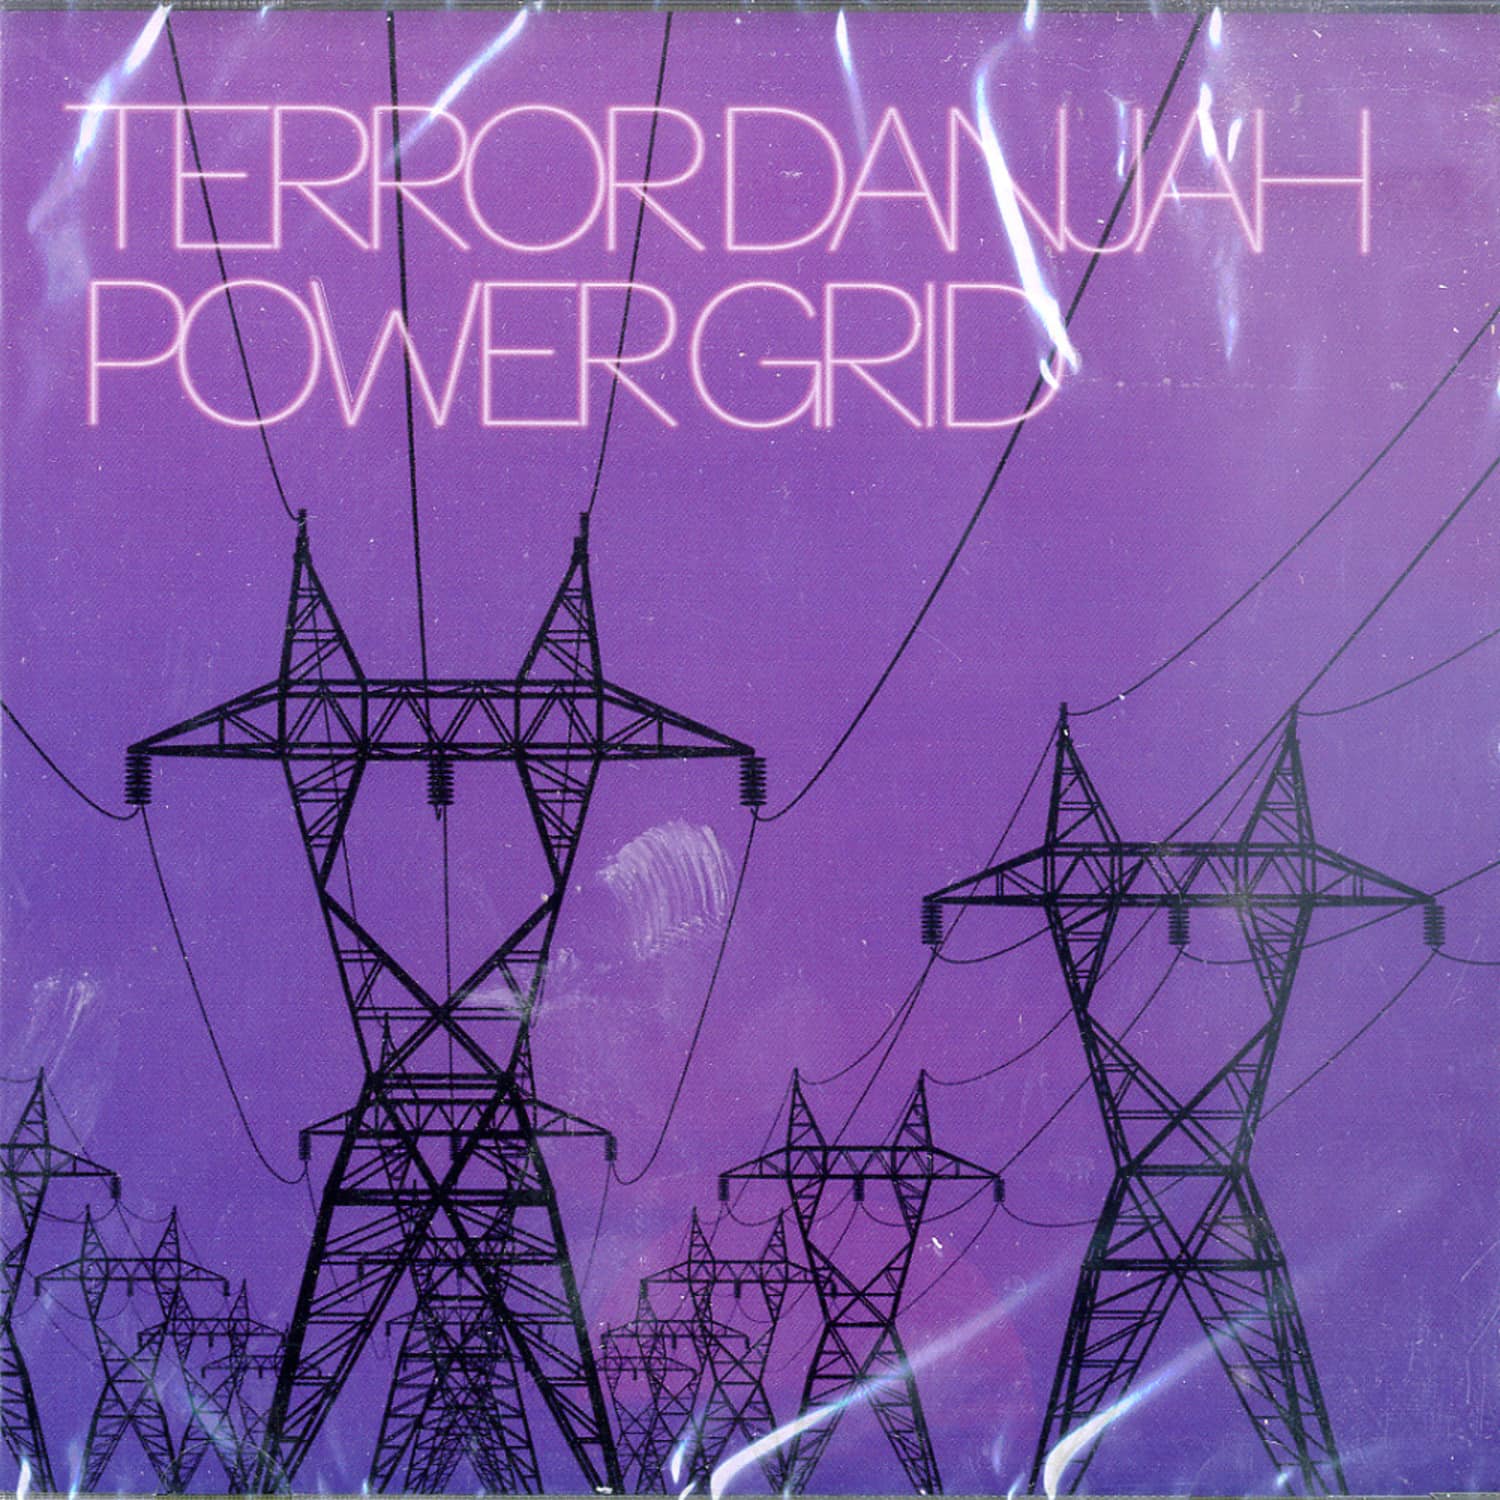 Terror Danjah - POWER GRID 